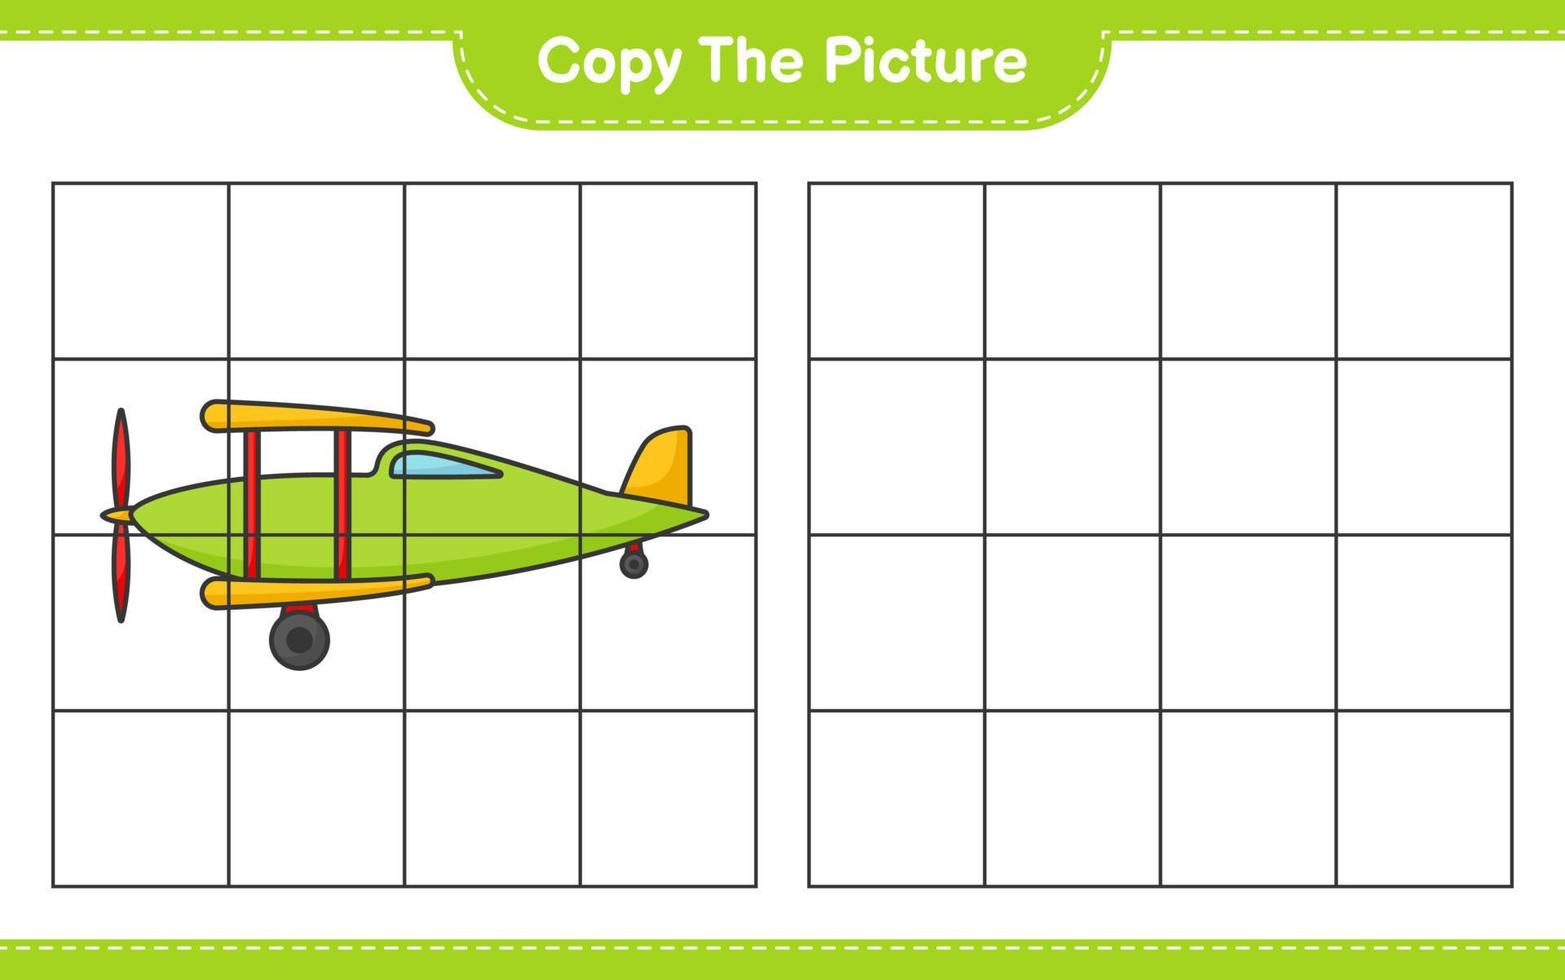 copie a imagem, copie a imagem do avião usando linhas de grade. jogo educativo para crianças, planilha para impressão, ilustração vetorial vetor